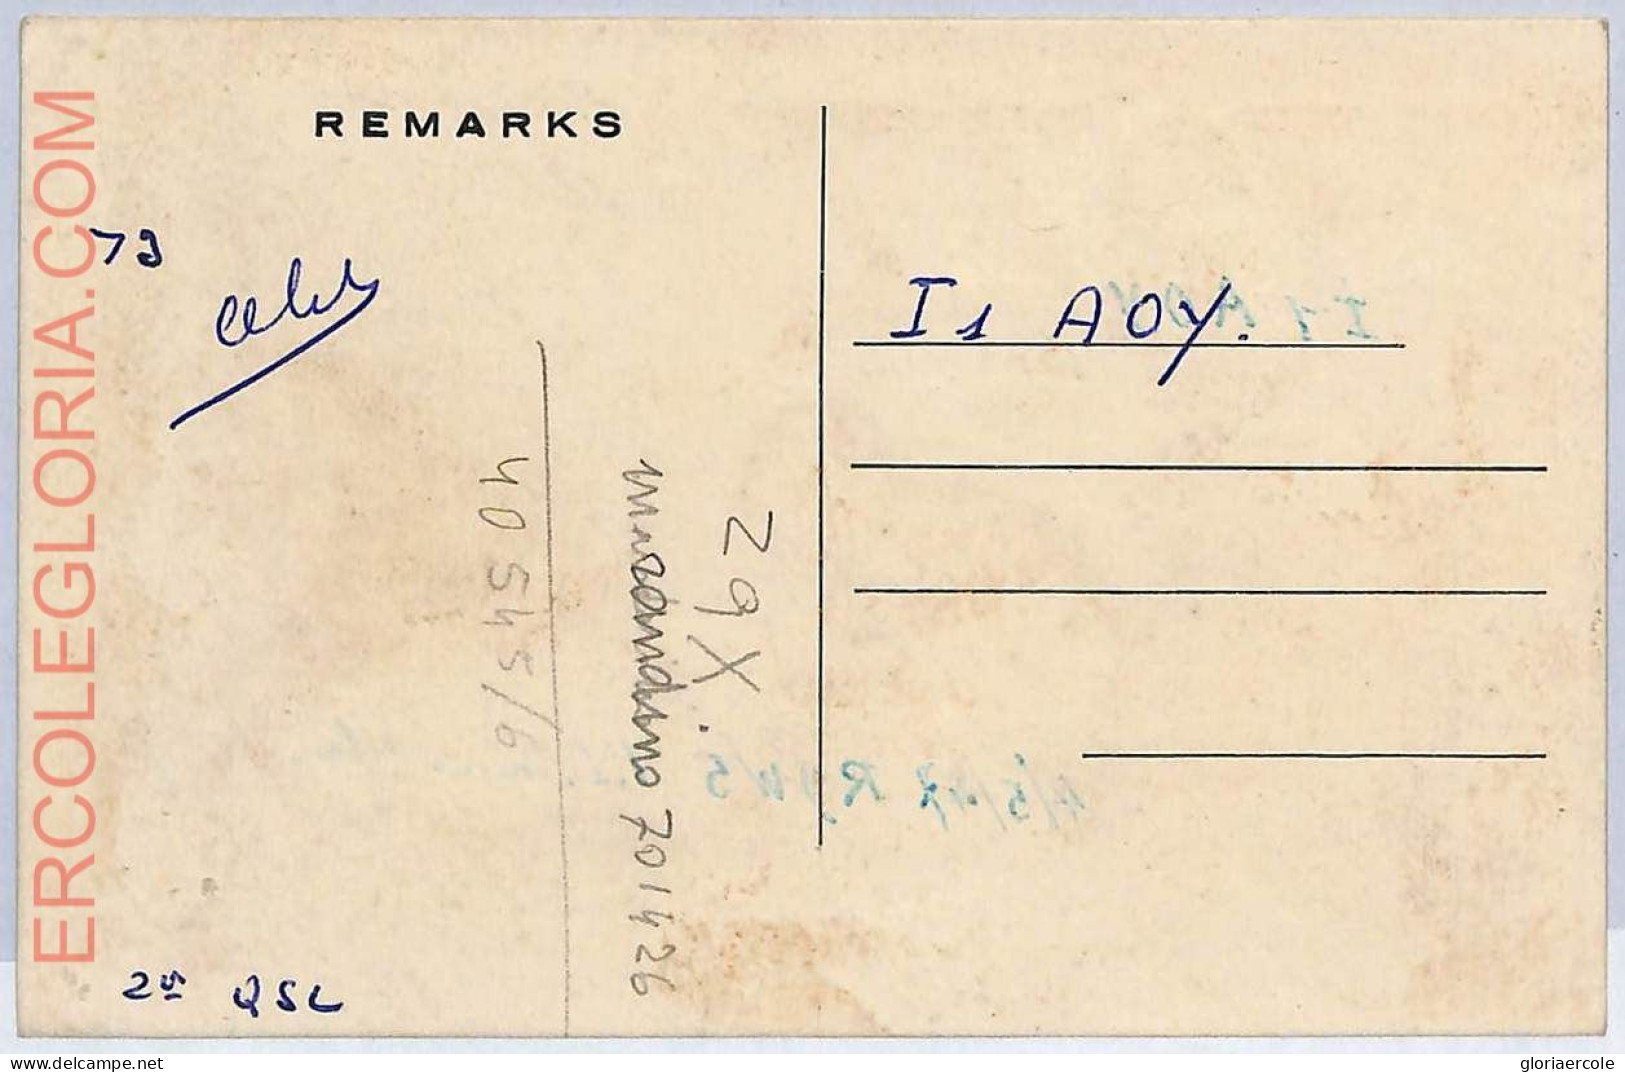 Ad9036 - ERITREA - RADIO FREQUENCY CARD   - Asmara -  1954 - Radio